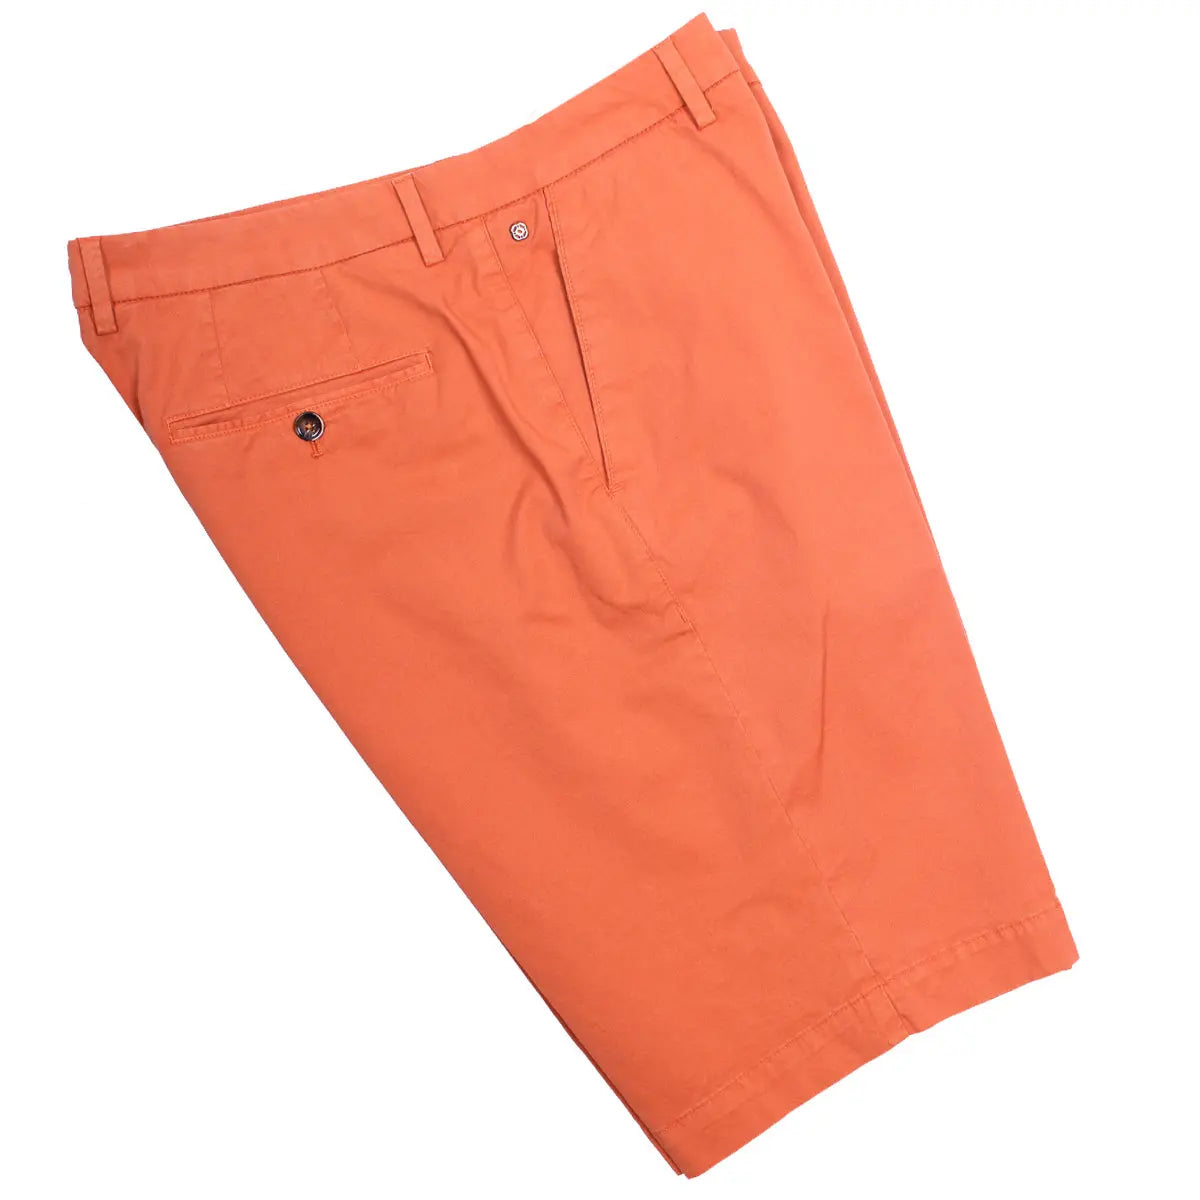 Dark Orange Cotton Stretch Slim Fit Chino Shorts  Robert Old   